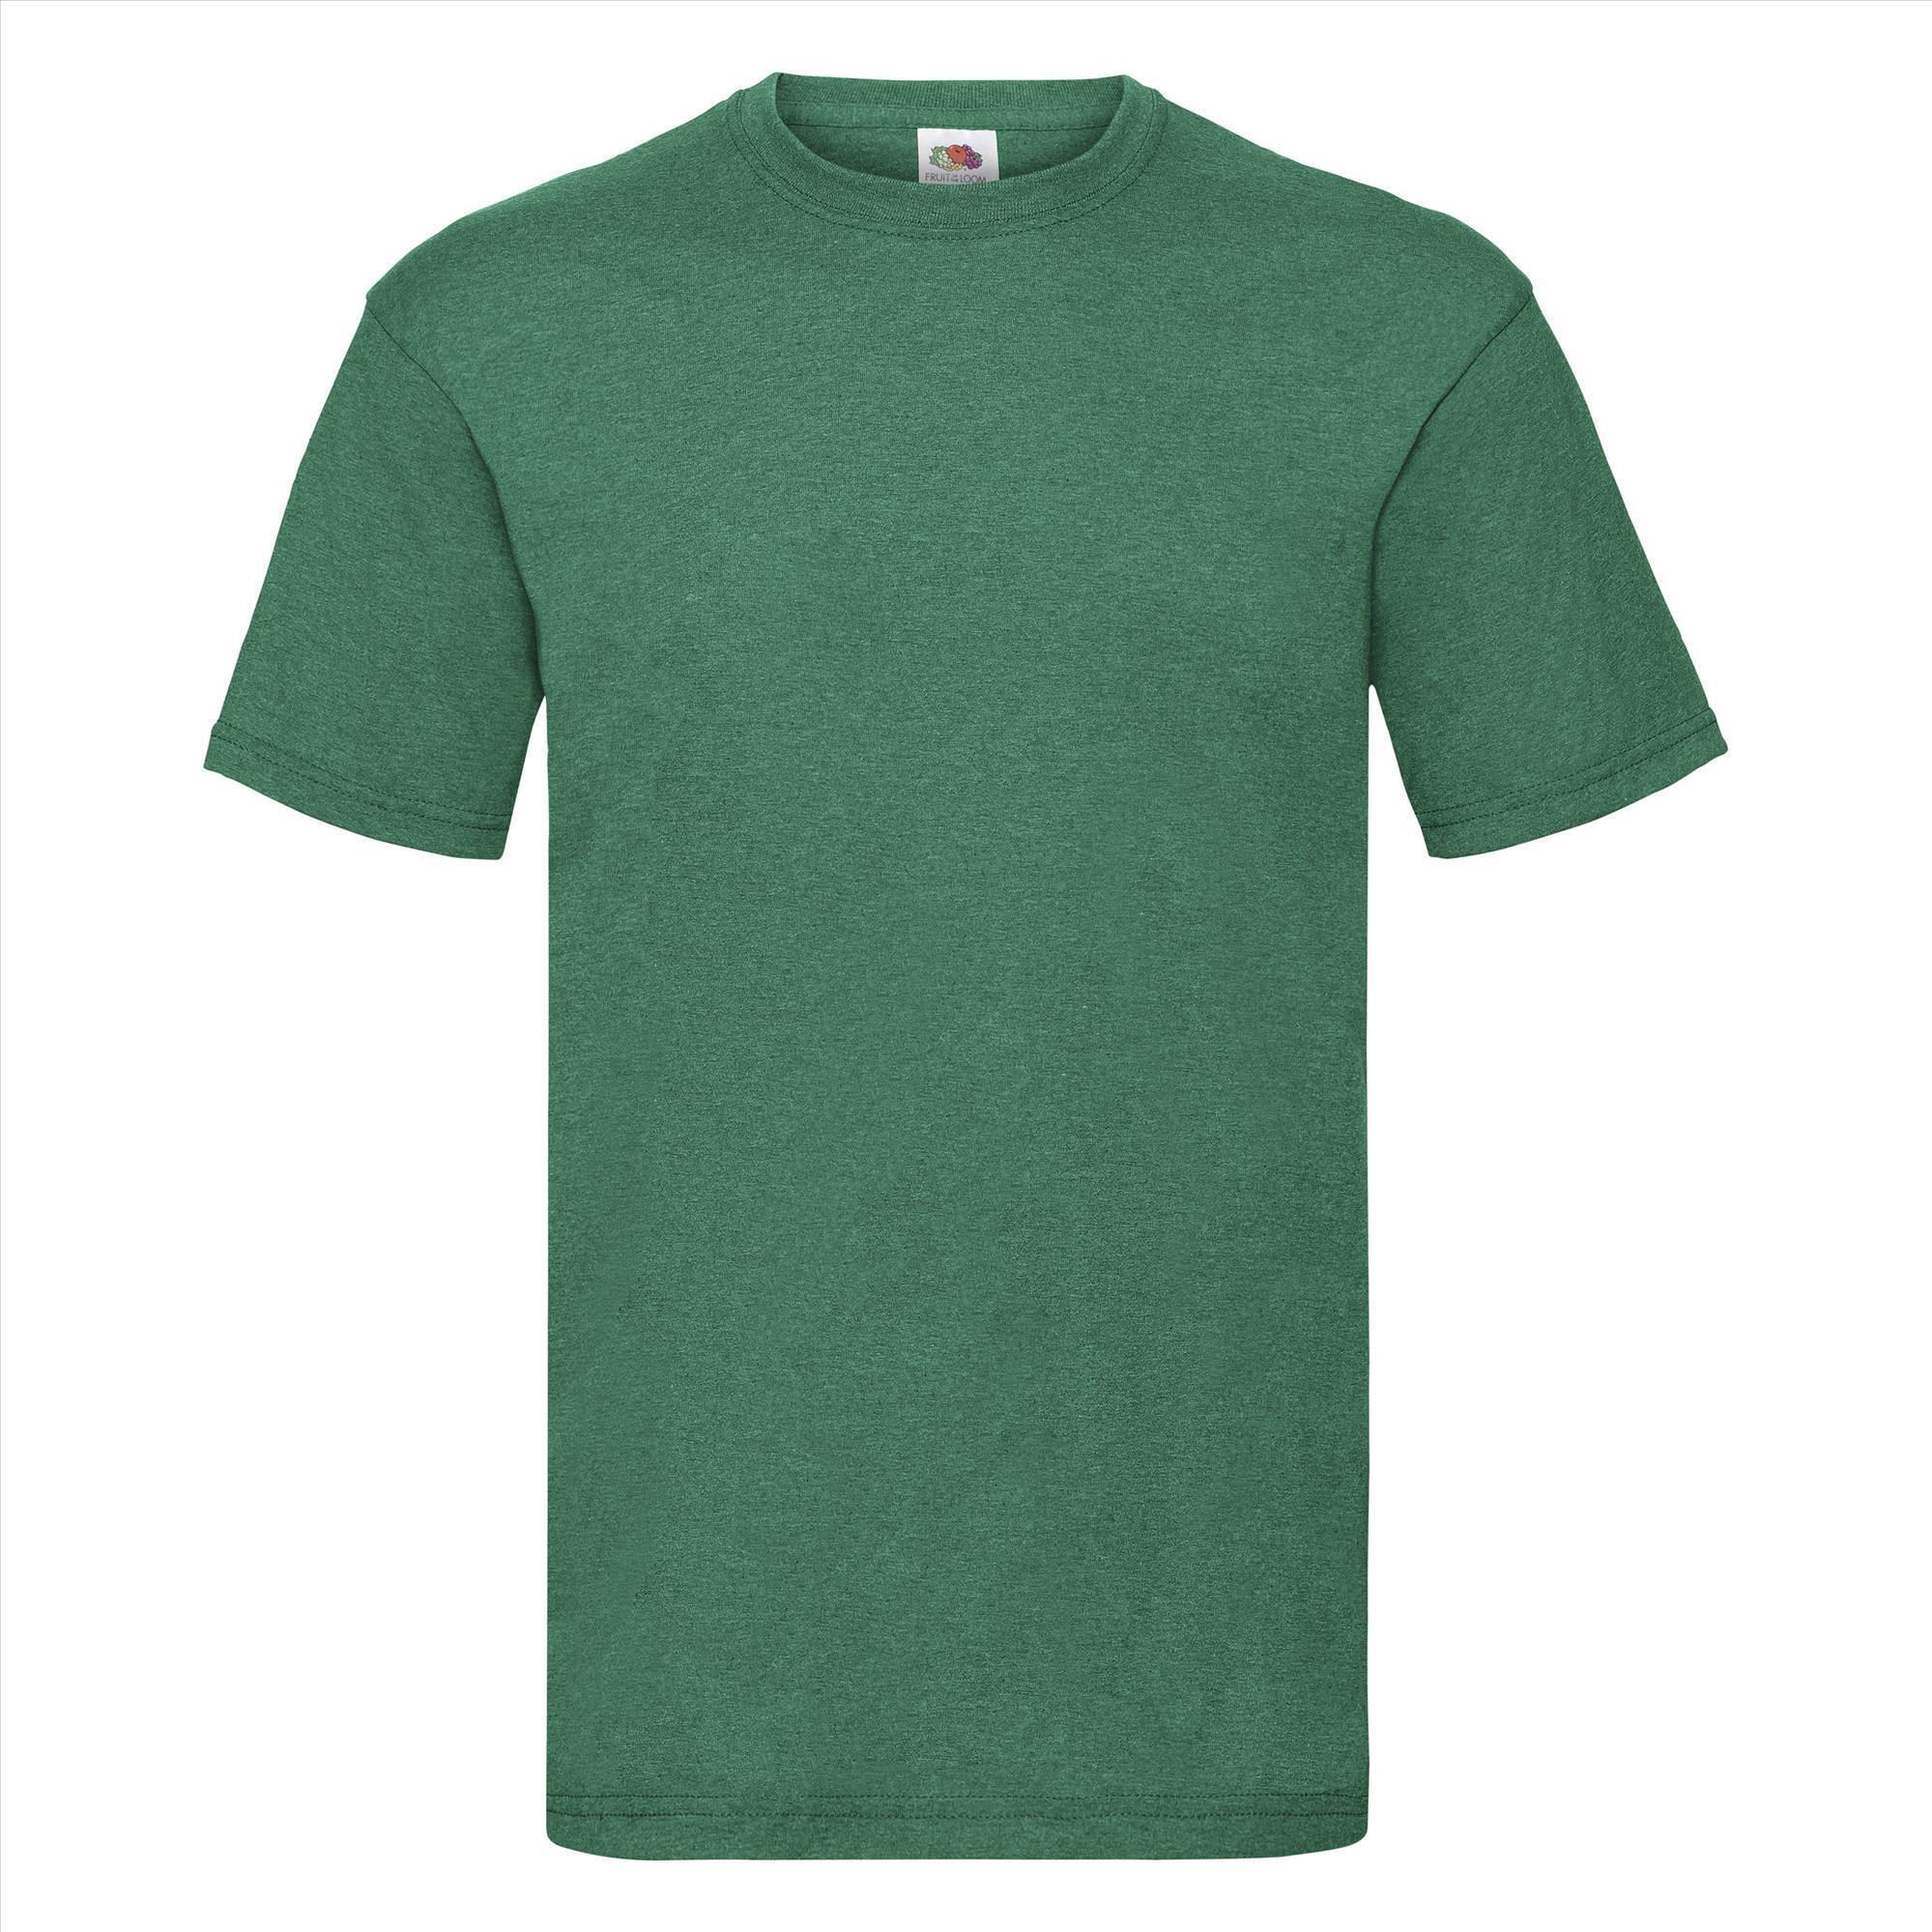 T-shirt voor mannen retro heather groen personaliseren T-shirt bedrukken